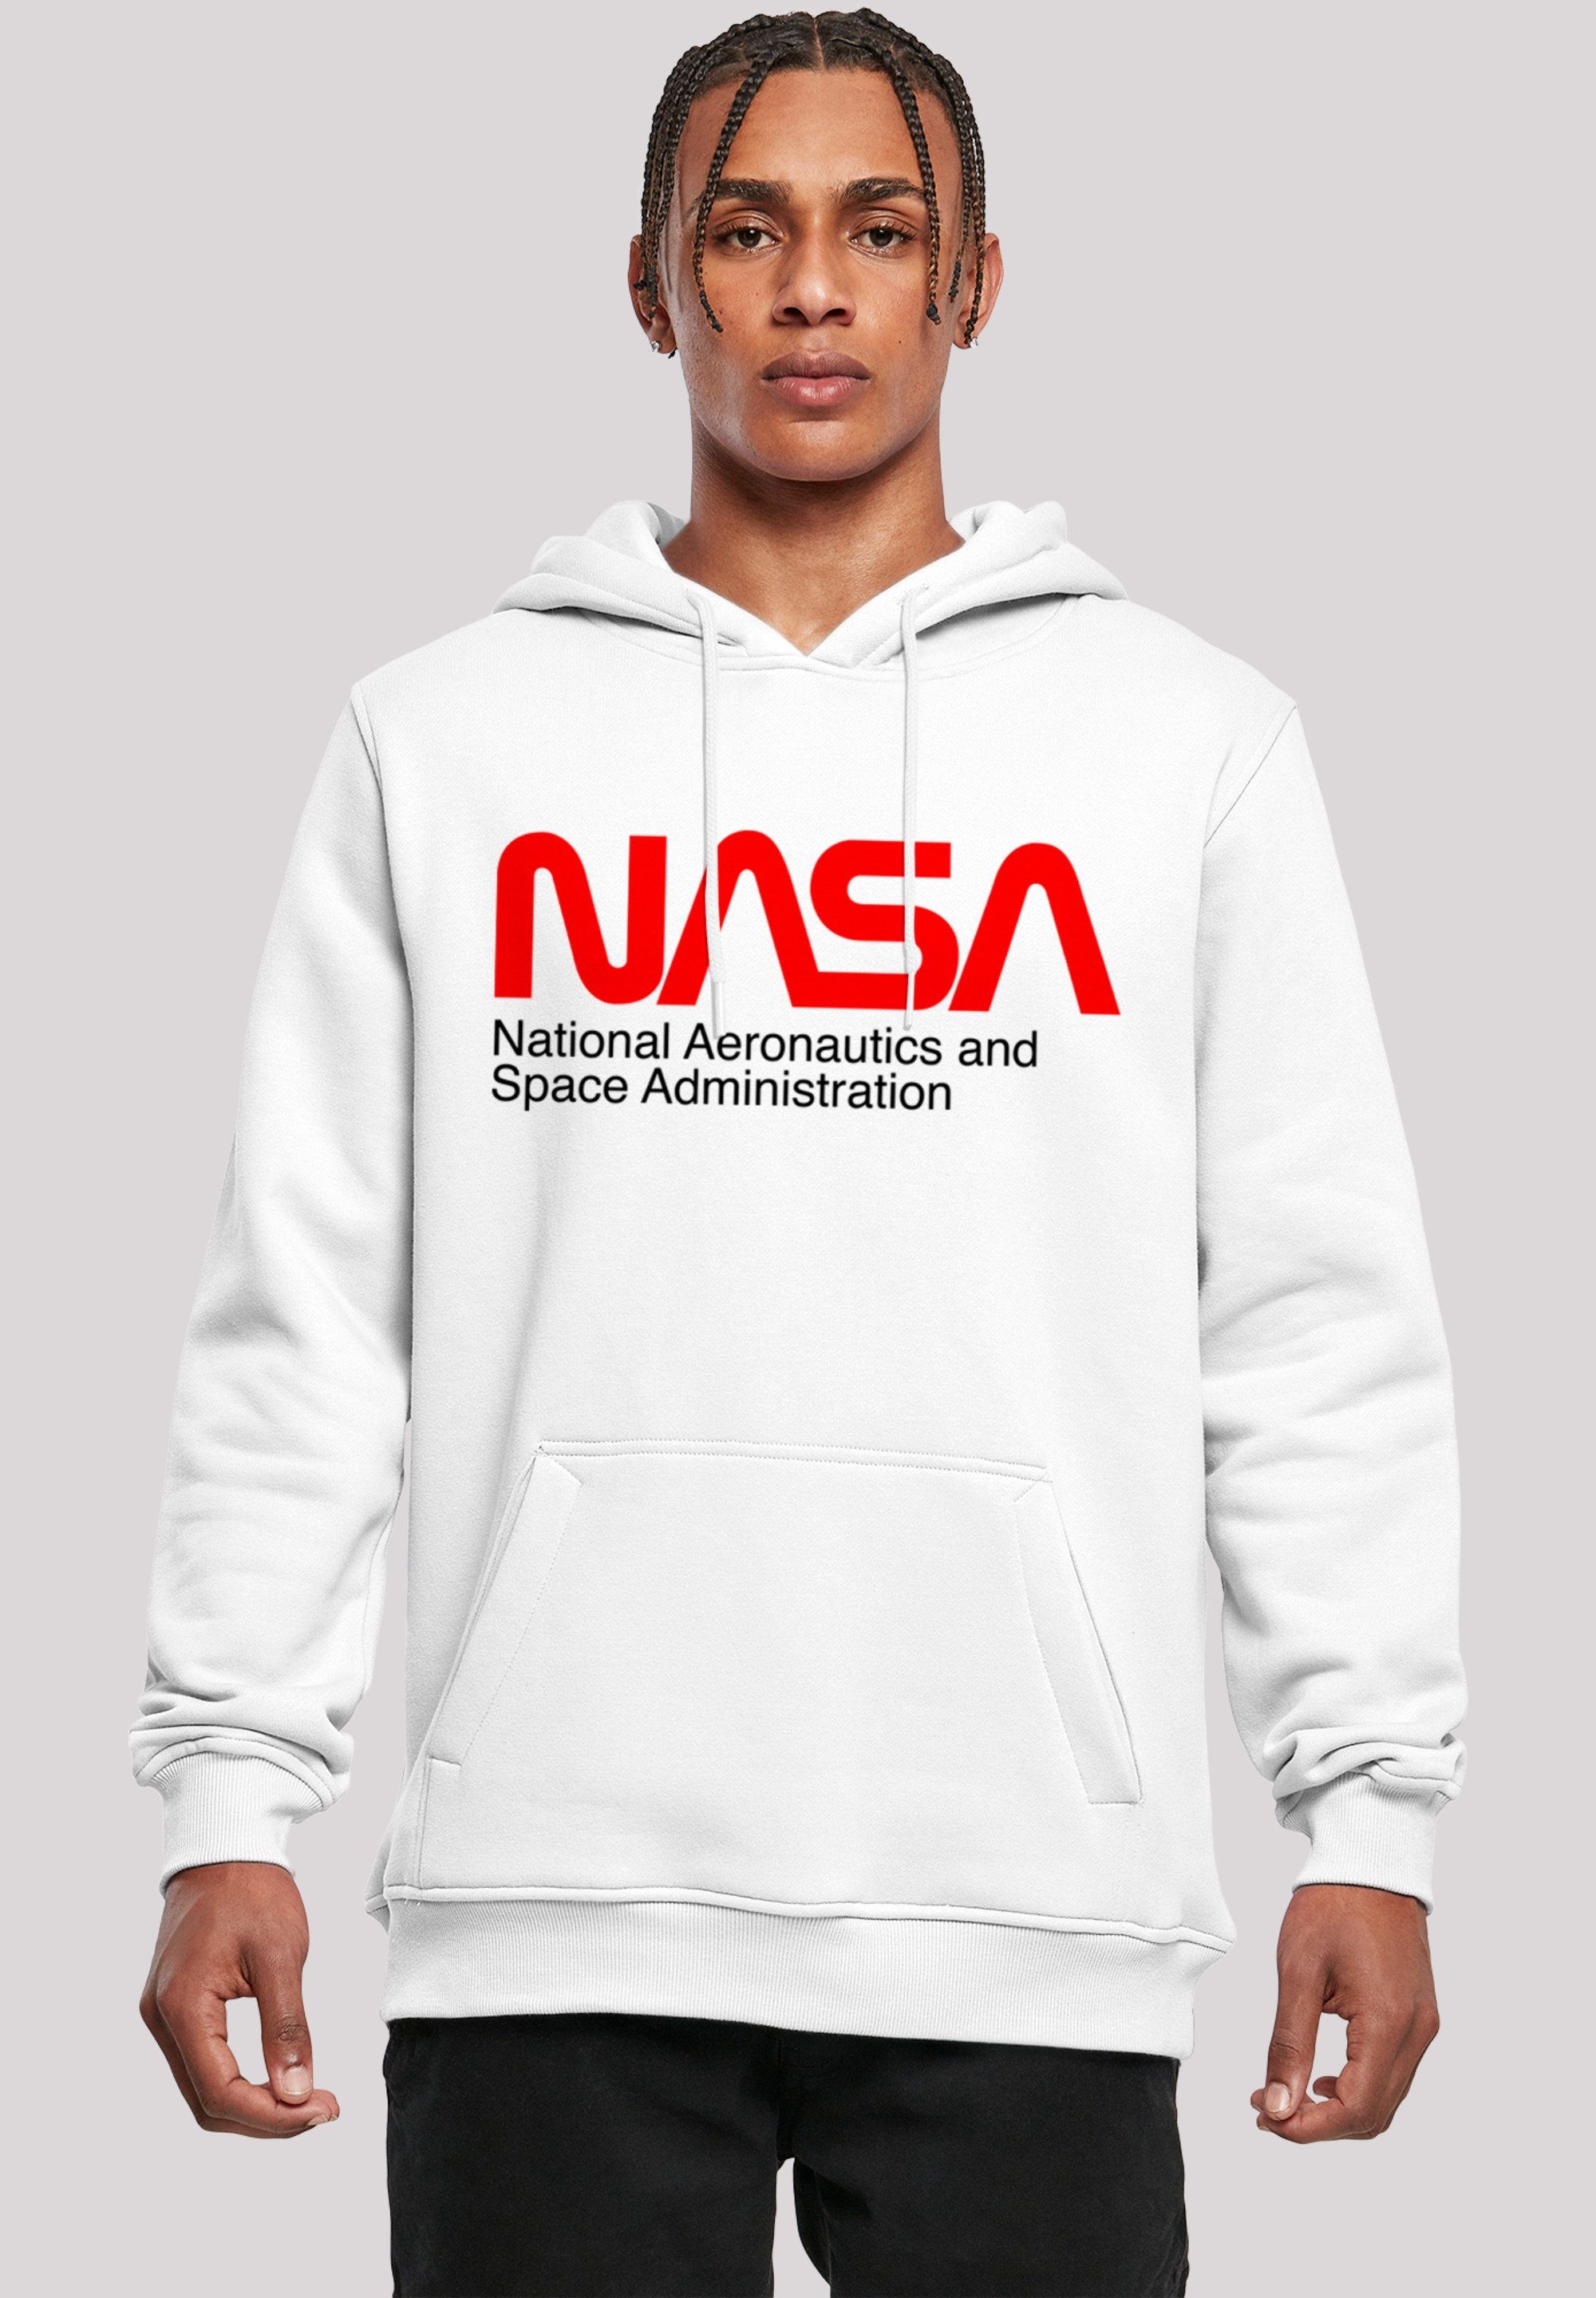 Größe und groß XL Sweatshirt Space F4NT4STIC Merch Model trägt ist cm ,Slim-Fit,Kapuzenpullover,Bedruckt, Herren,Premium Aeronautics 180 Das NASA And